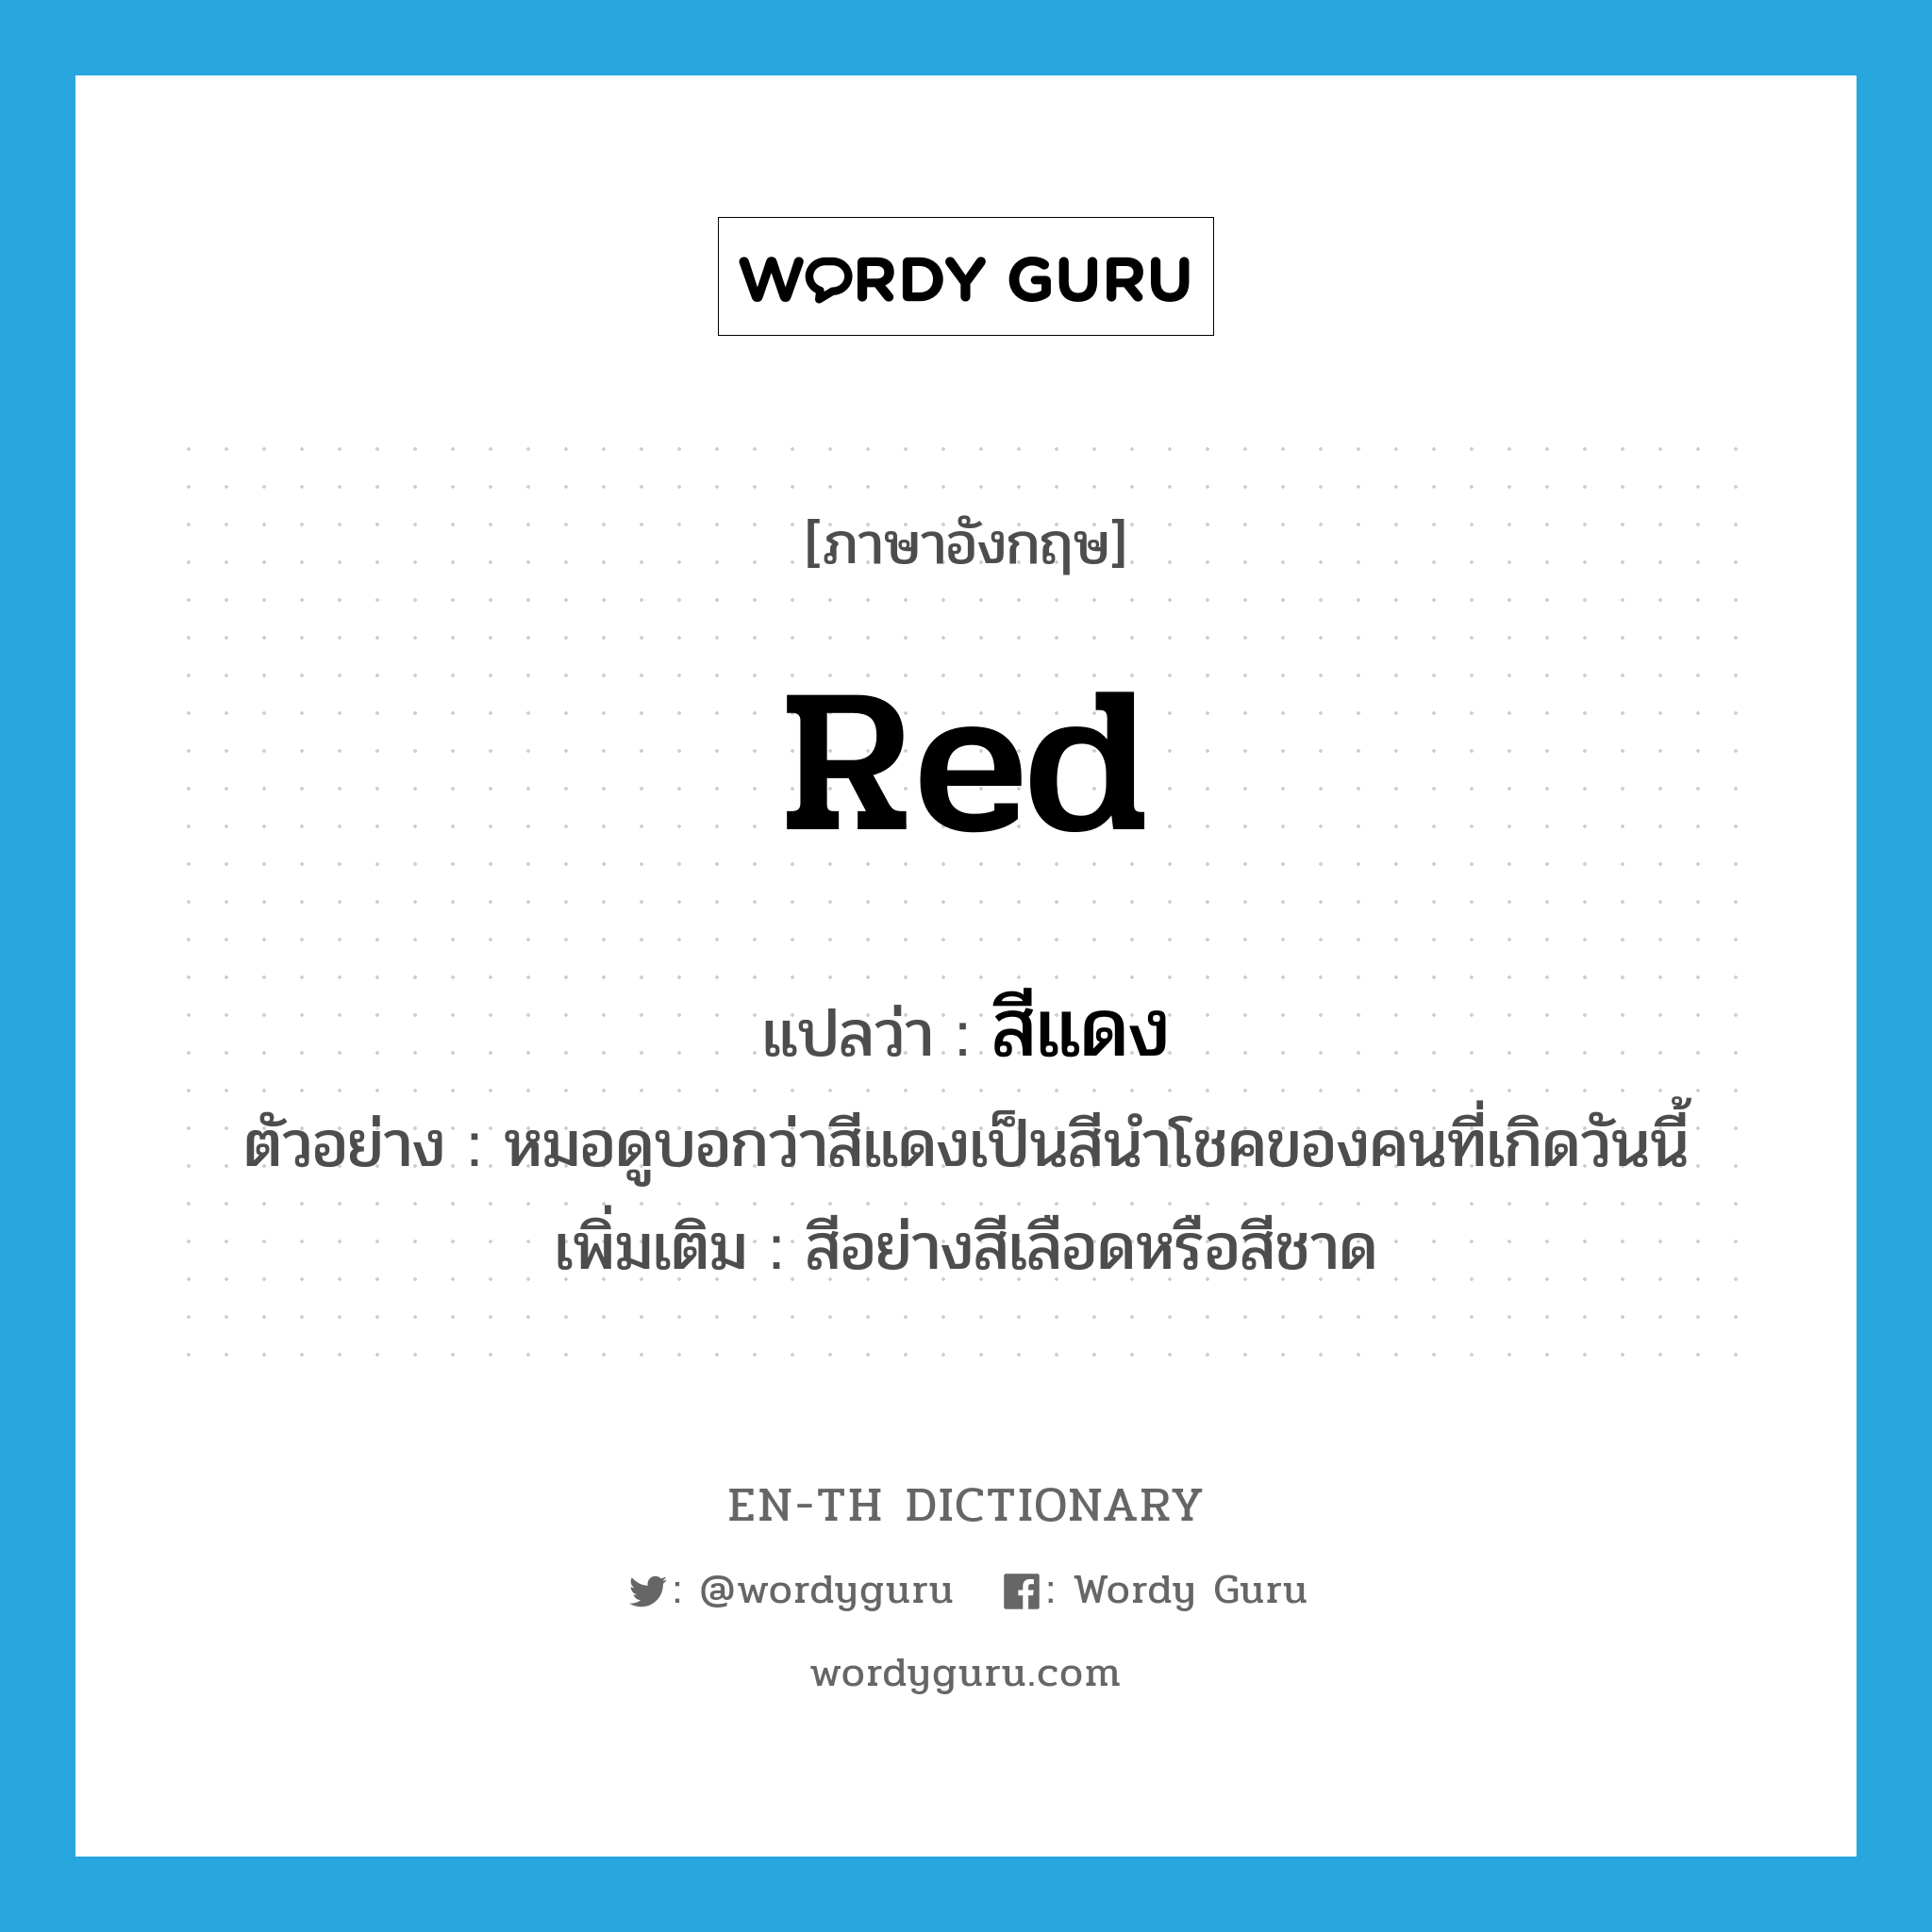 สีแดง ภาษาอังกฤษ?, คำศัพท์ภาษาอังกฤษ สีแดง แปลว่า red ประเภท N ตัวอย่าง หมอดูบอกว่าสีแดงเป็นสีนำโชคของคนที่เกิดวันนี้ เพิ่มเติม สีอย่างสีเลือดหรือสีชาด หมวด N